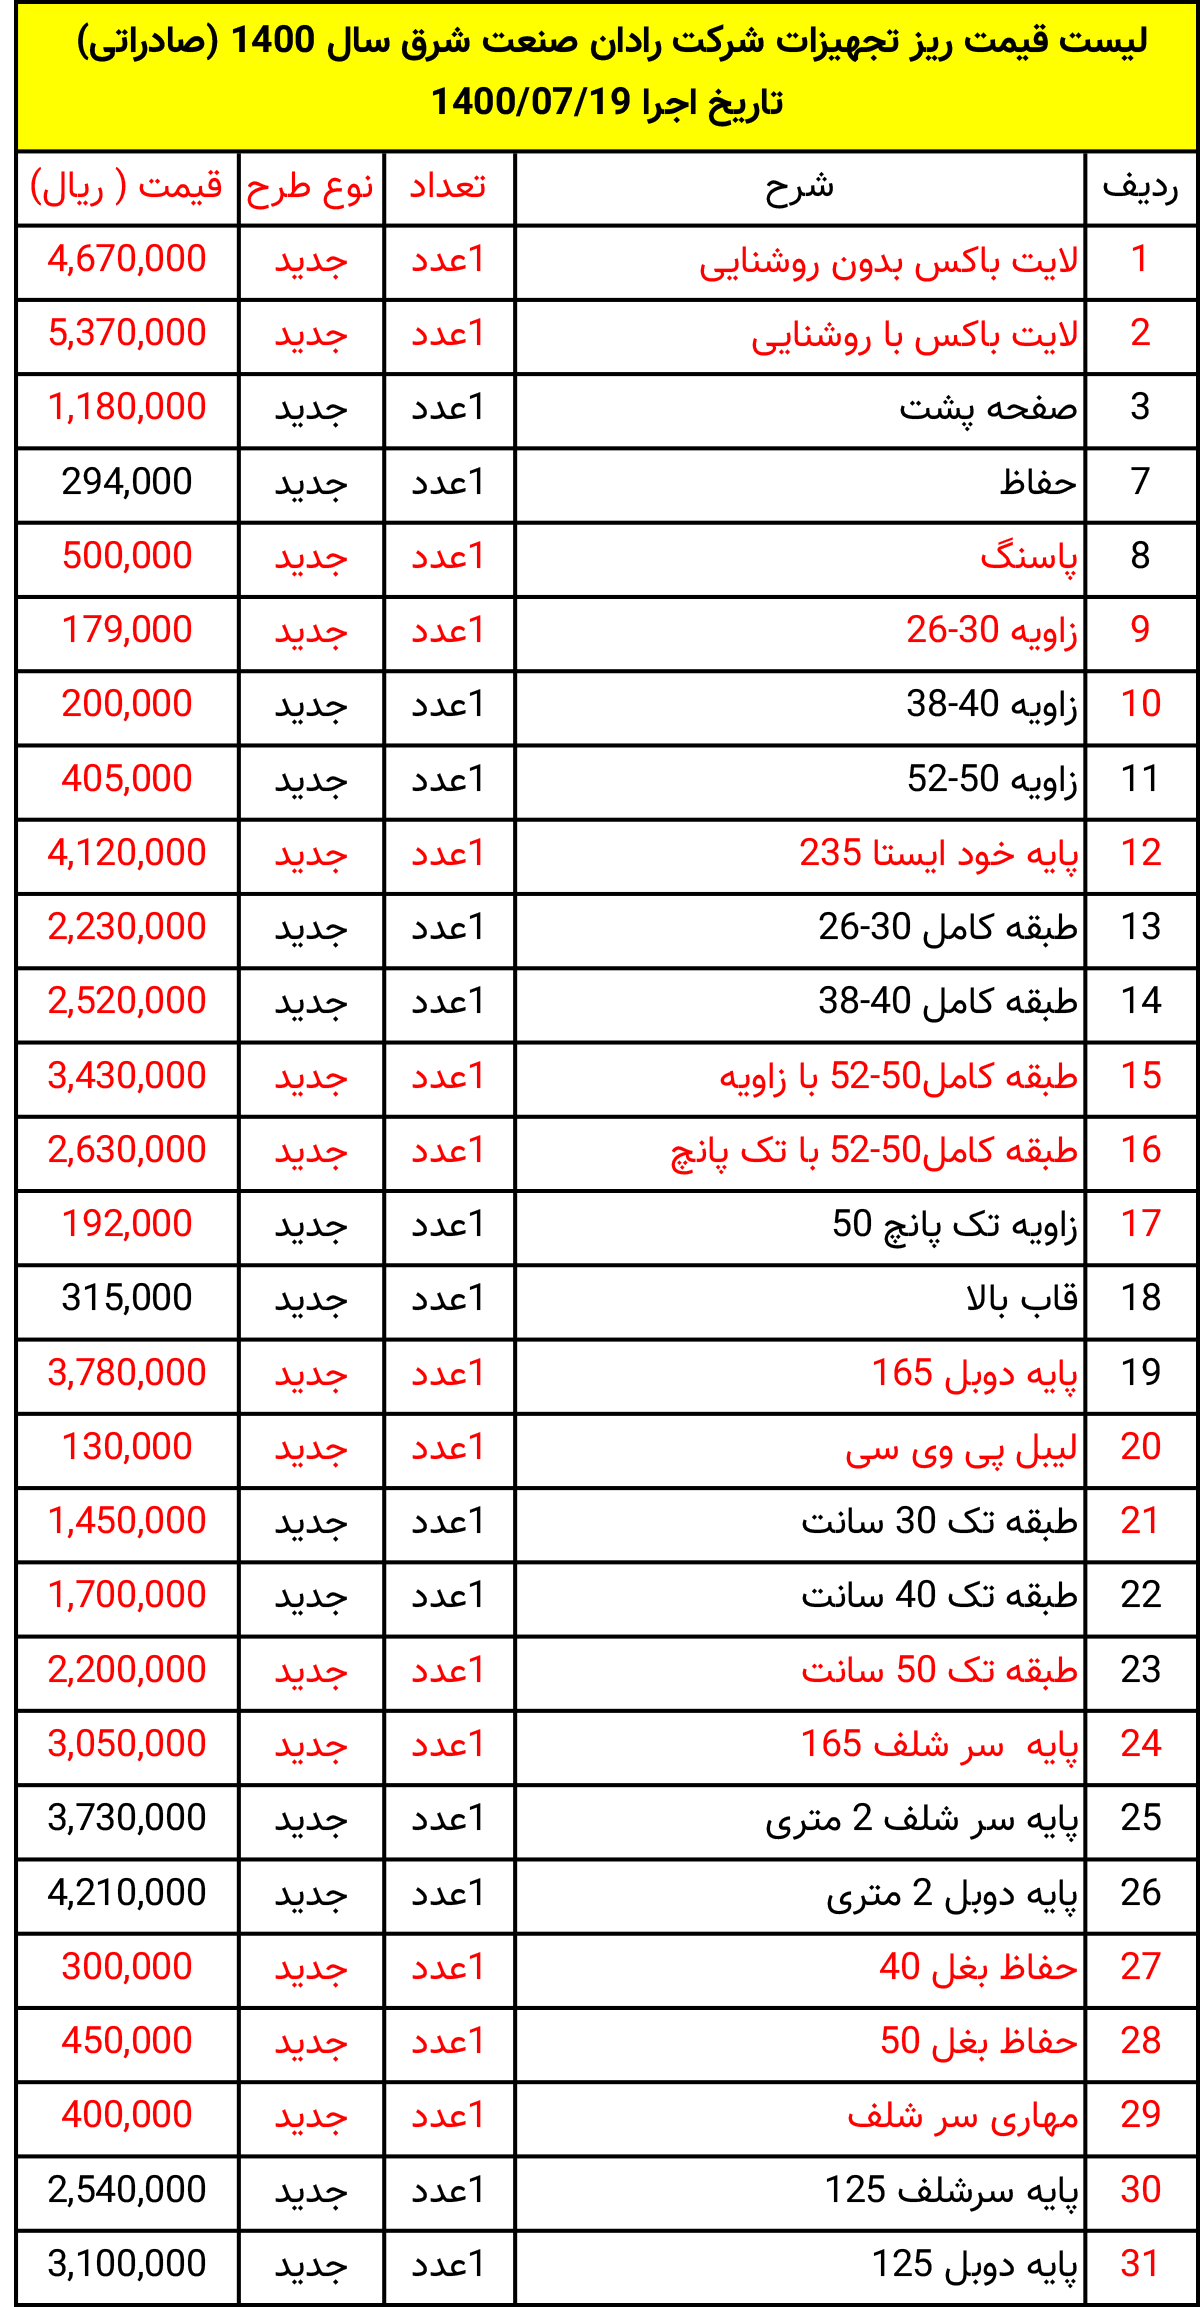 لیست قیمت تجهیزات فروشگاهی صادراتی شرکت رادان صنعت شرق سال 1400 تاریخ 1400/07/19